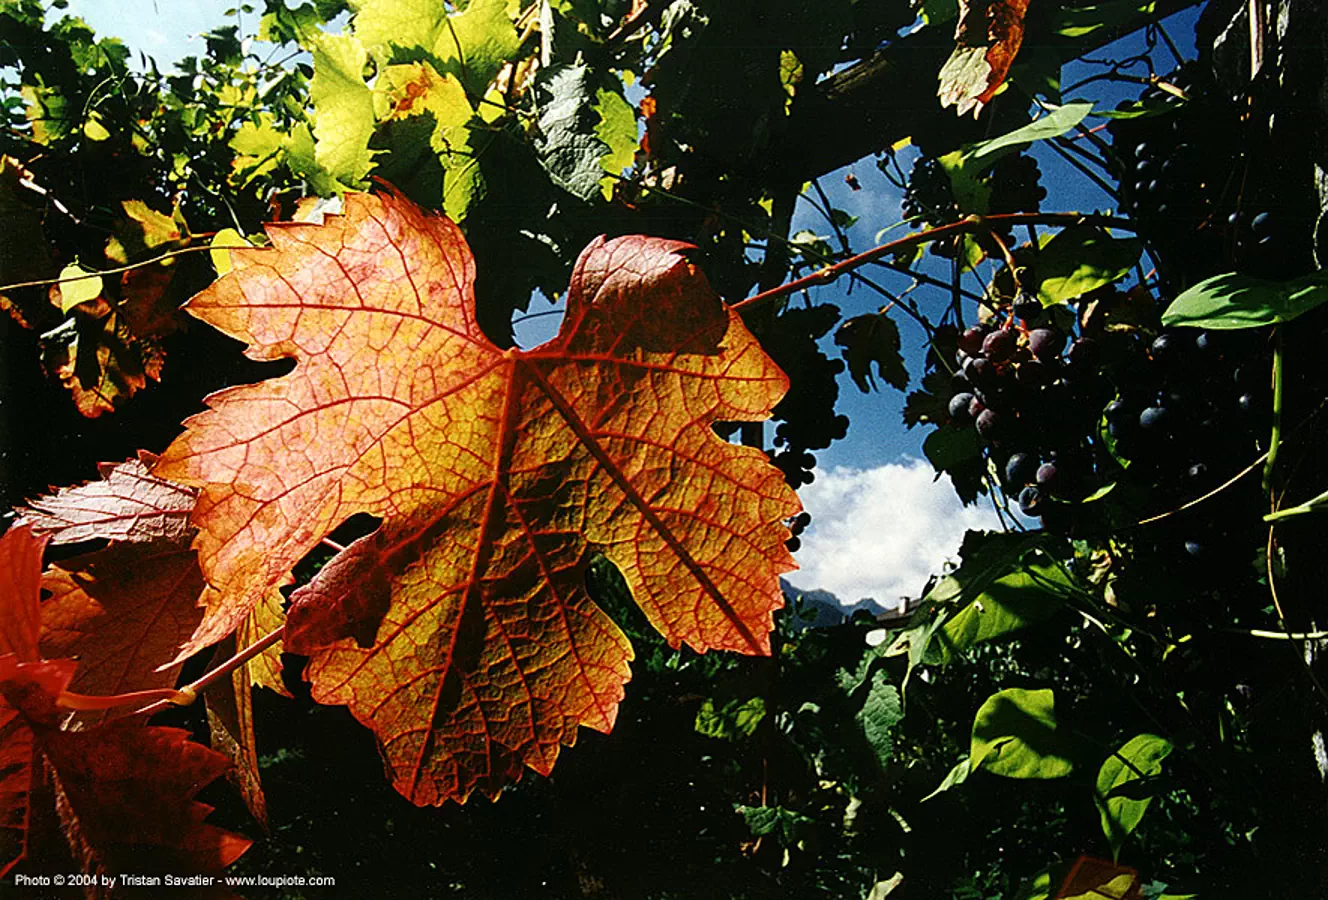 vineleaf with backlight, backlight, leaves, plant veins, vine leaf